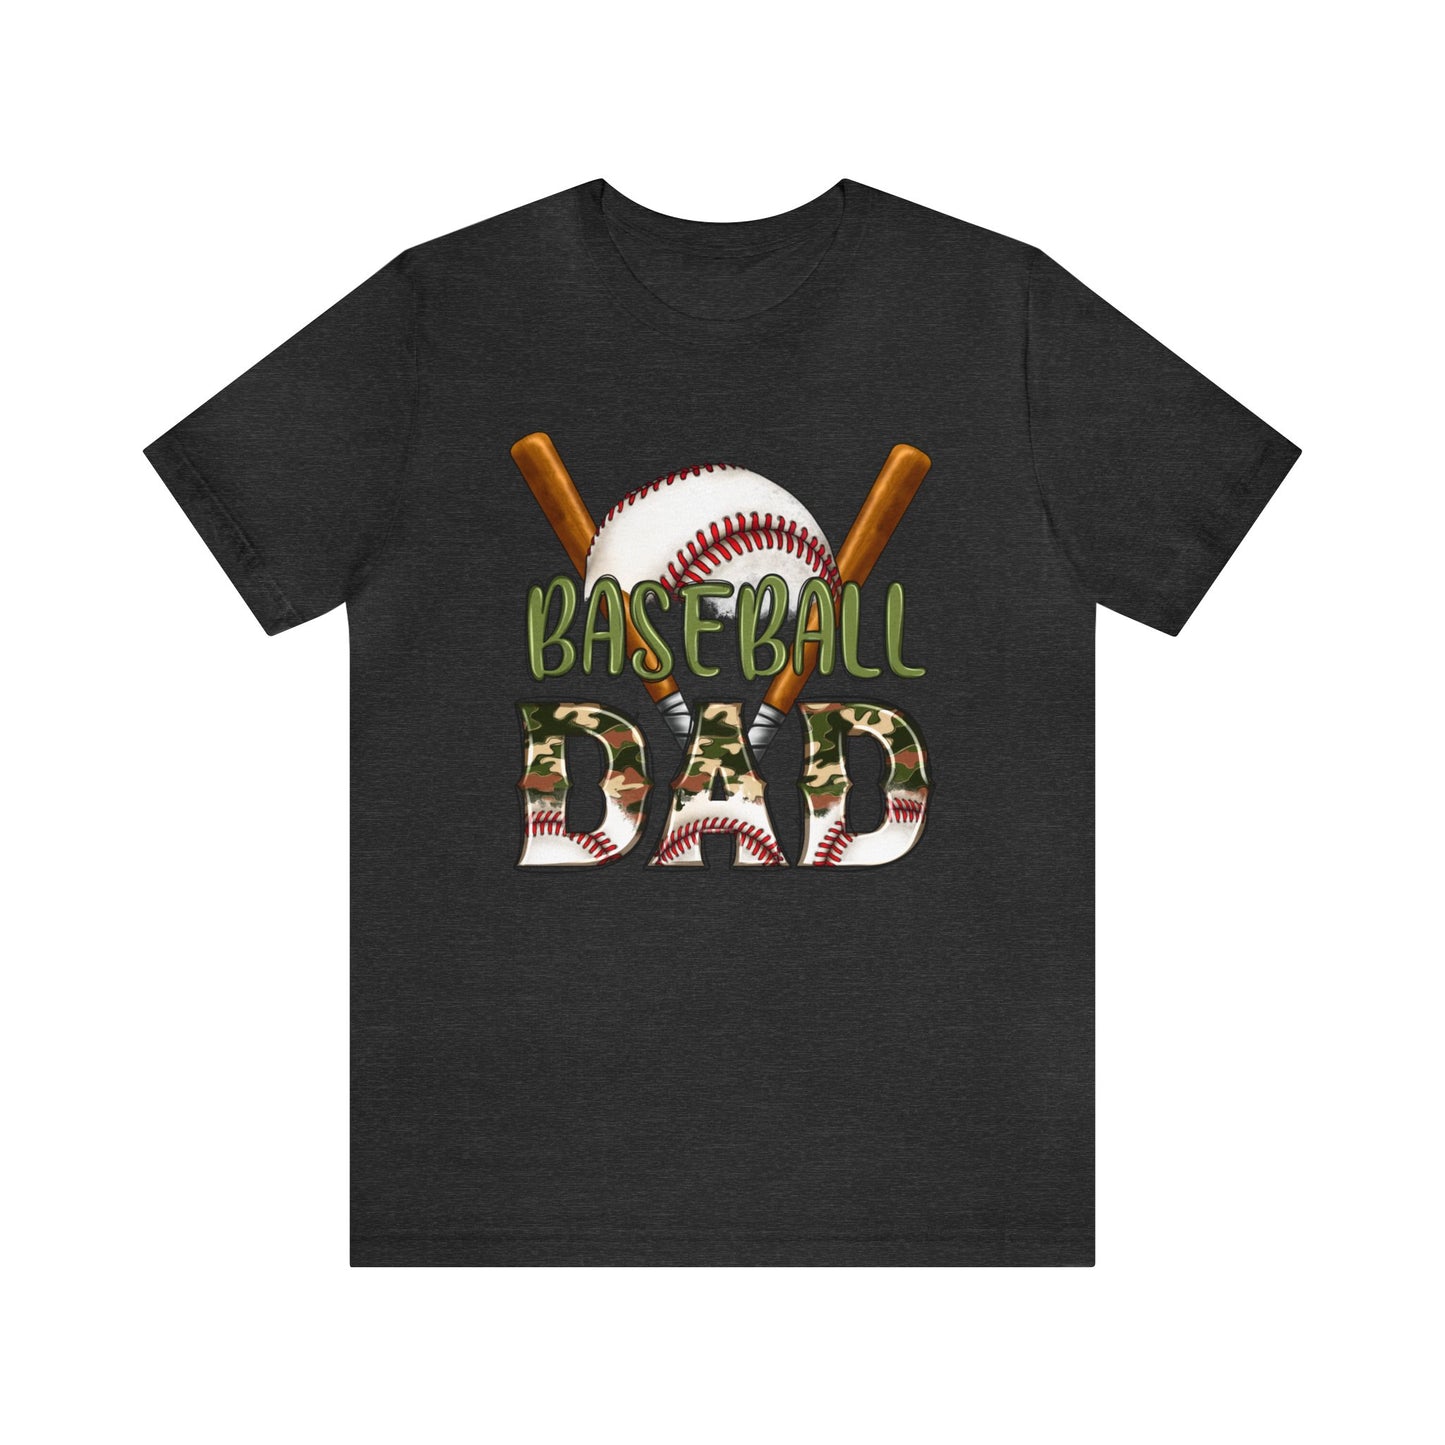 Baseball Dad - Short Sleeve Tee